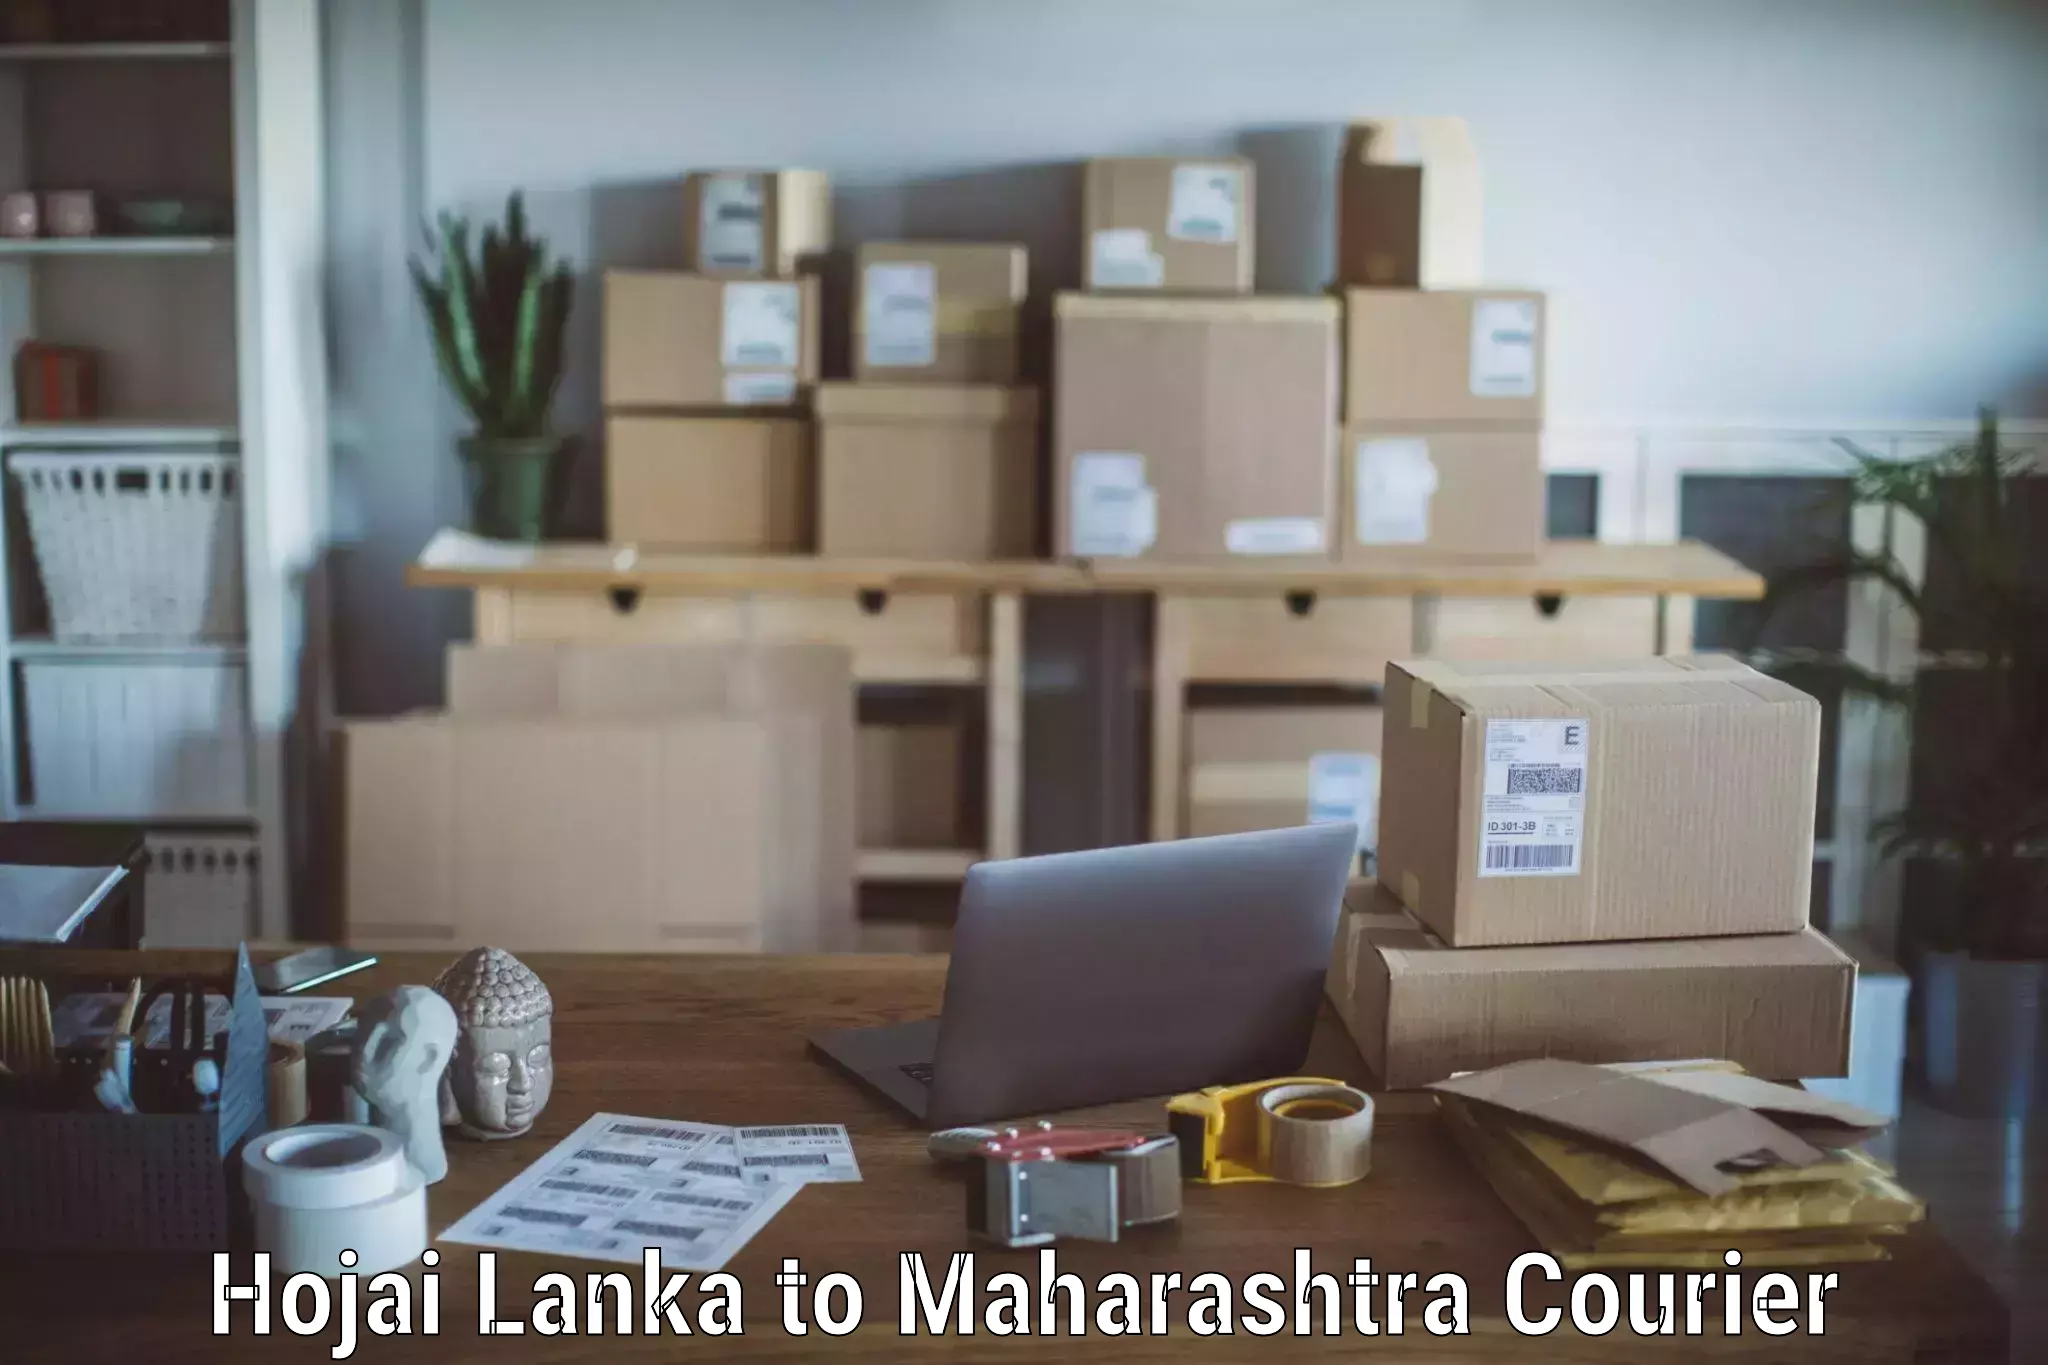 Household moving experts Hojai Lanka to Maharashtra